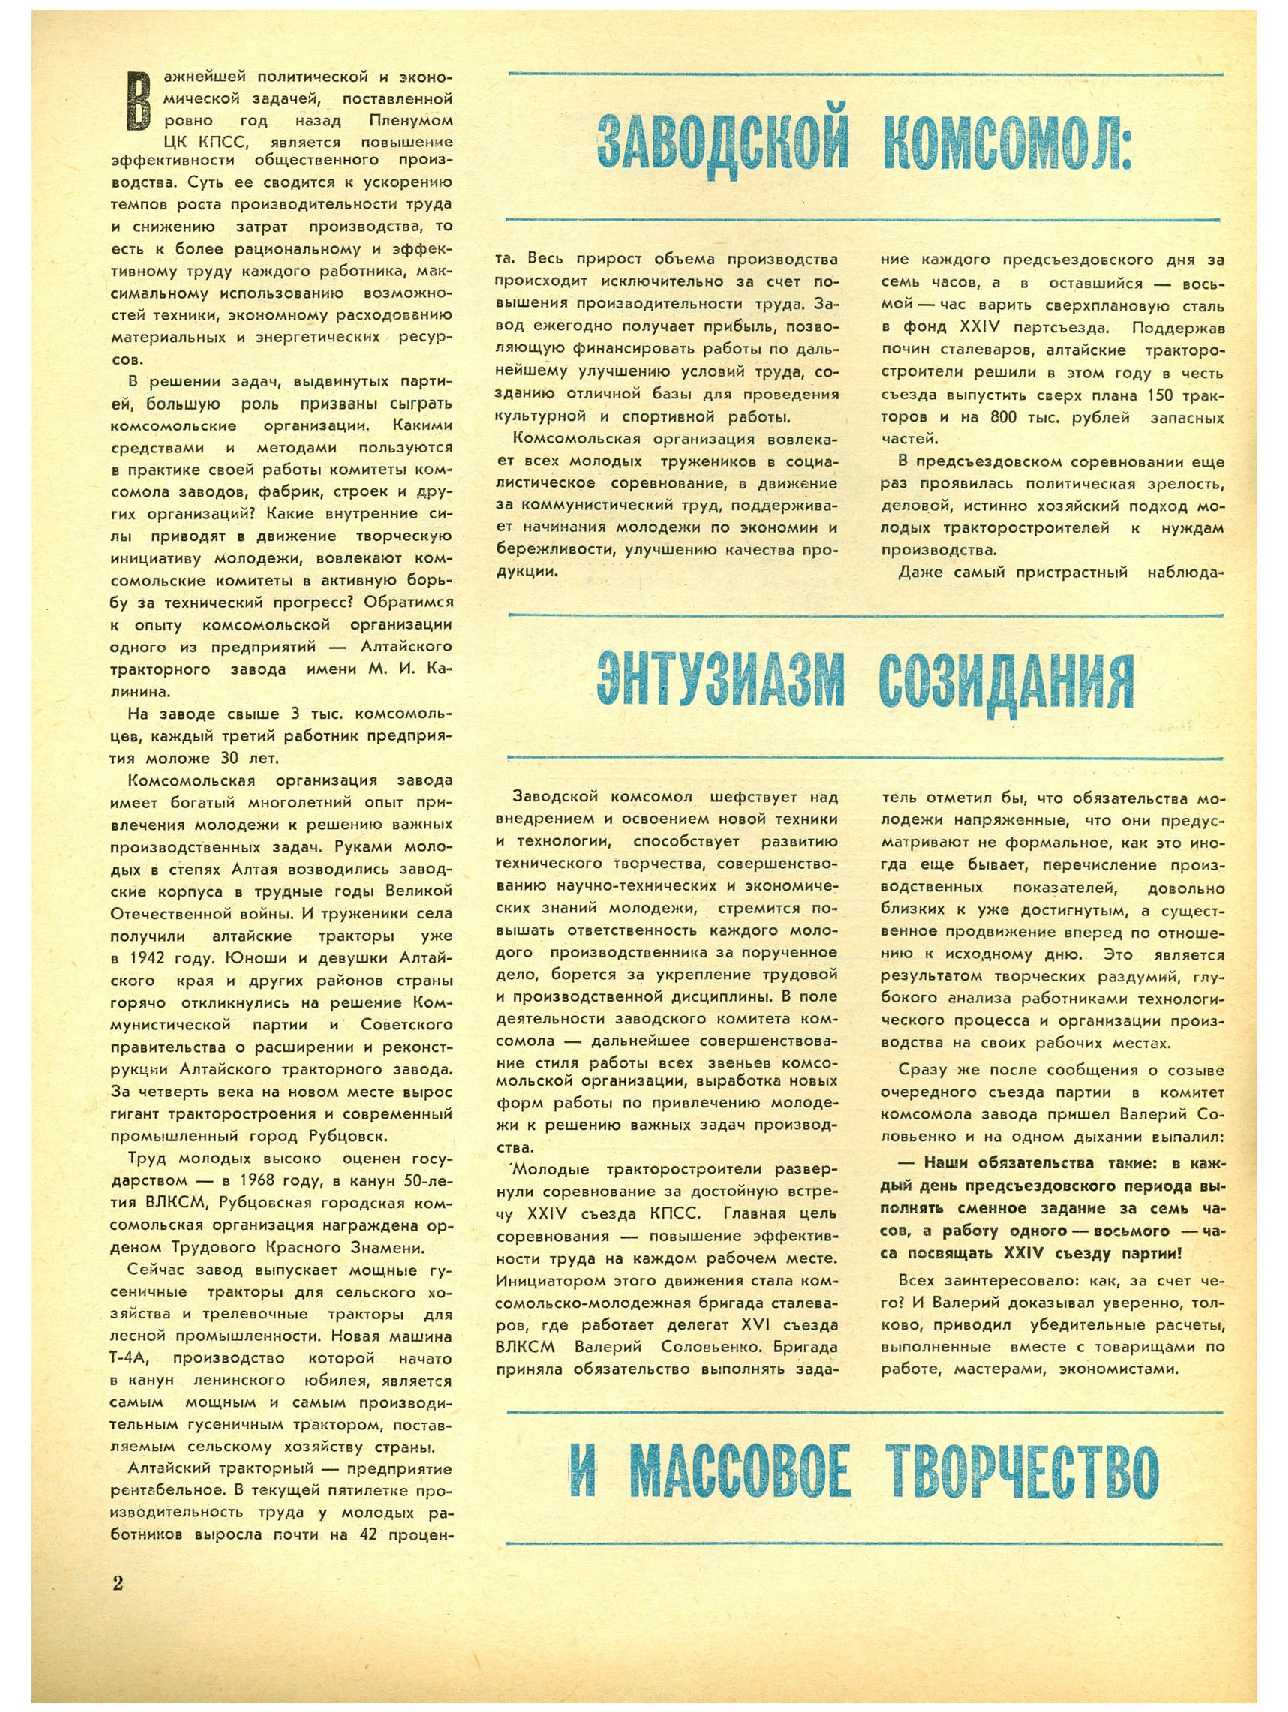 МК 12, 1970, 2 c.